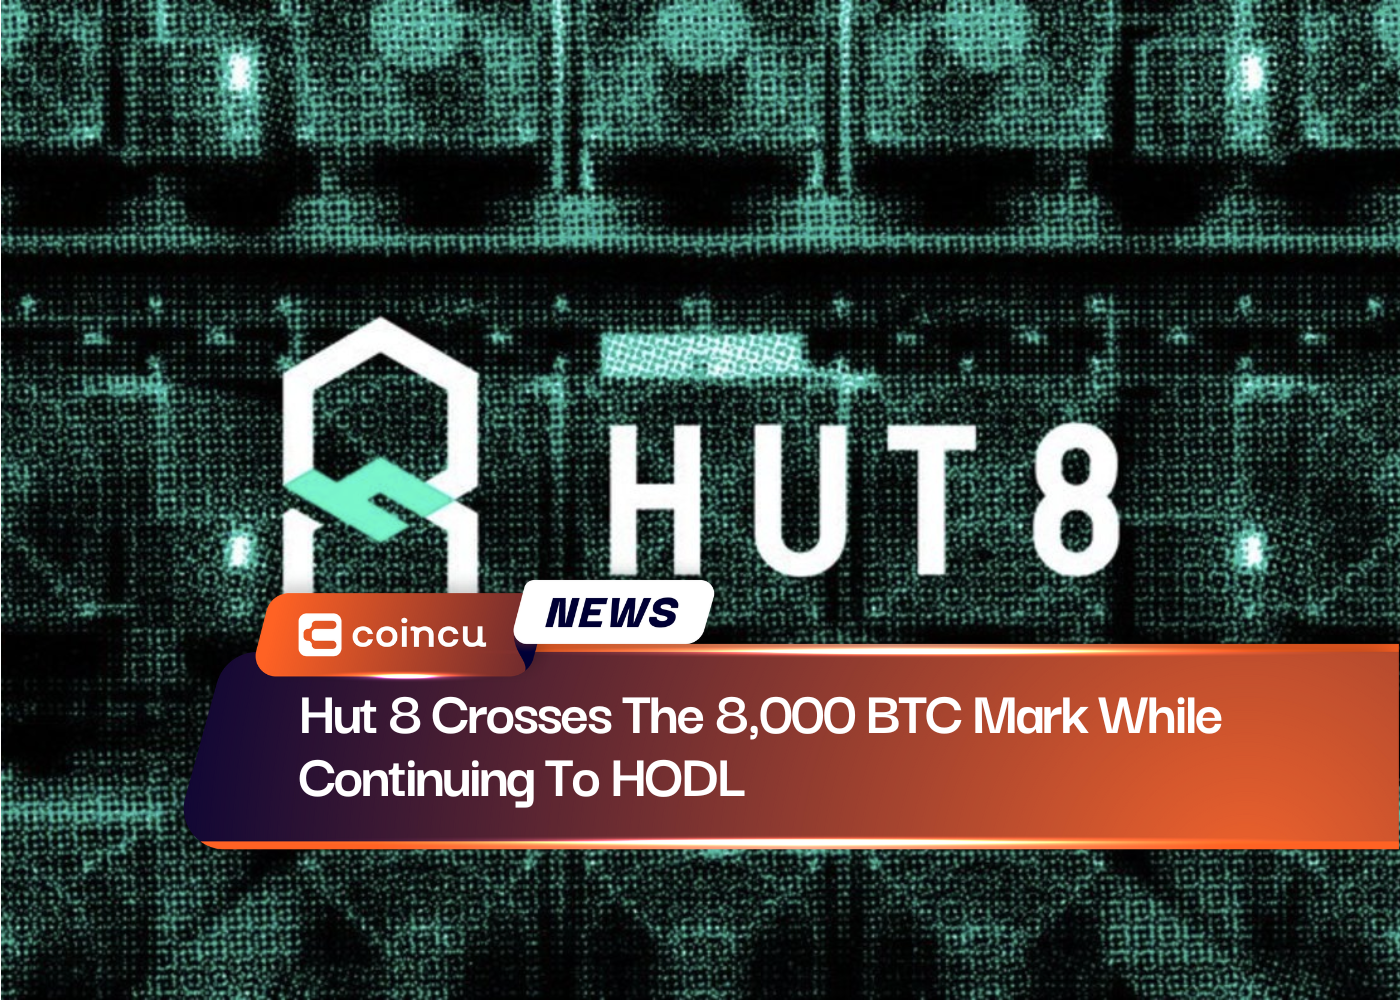 Hut 8 пересекает отметку в 8,000 BTC, продолжая HODL